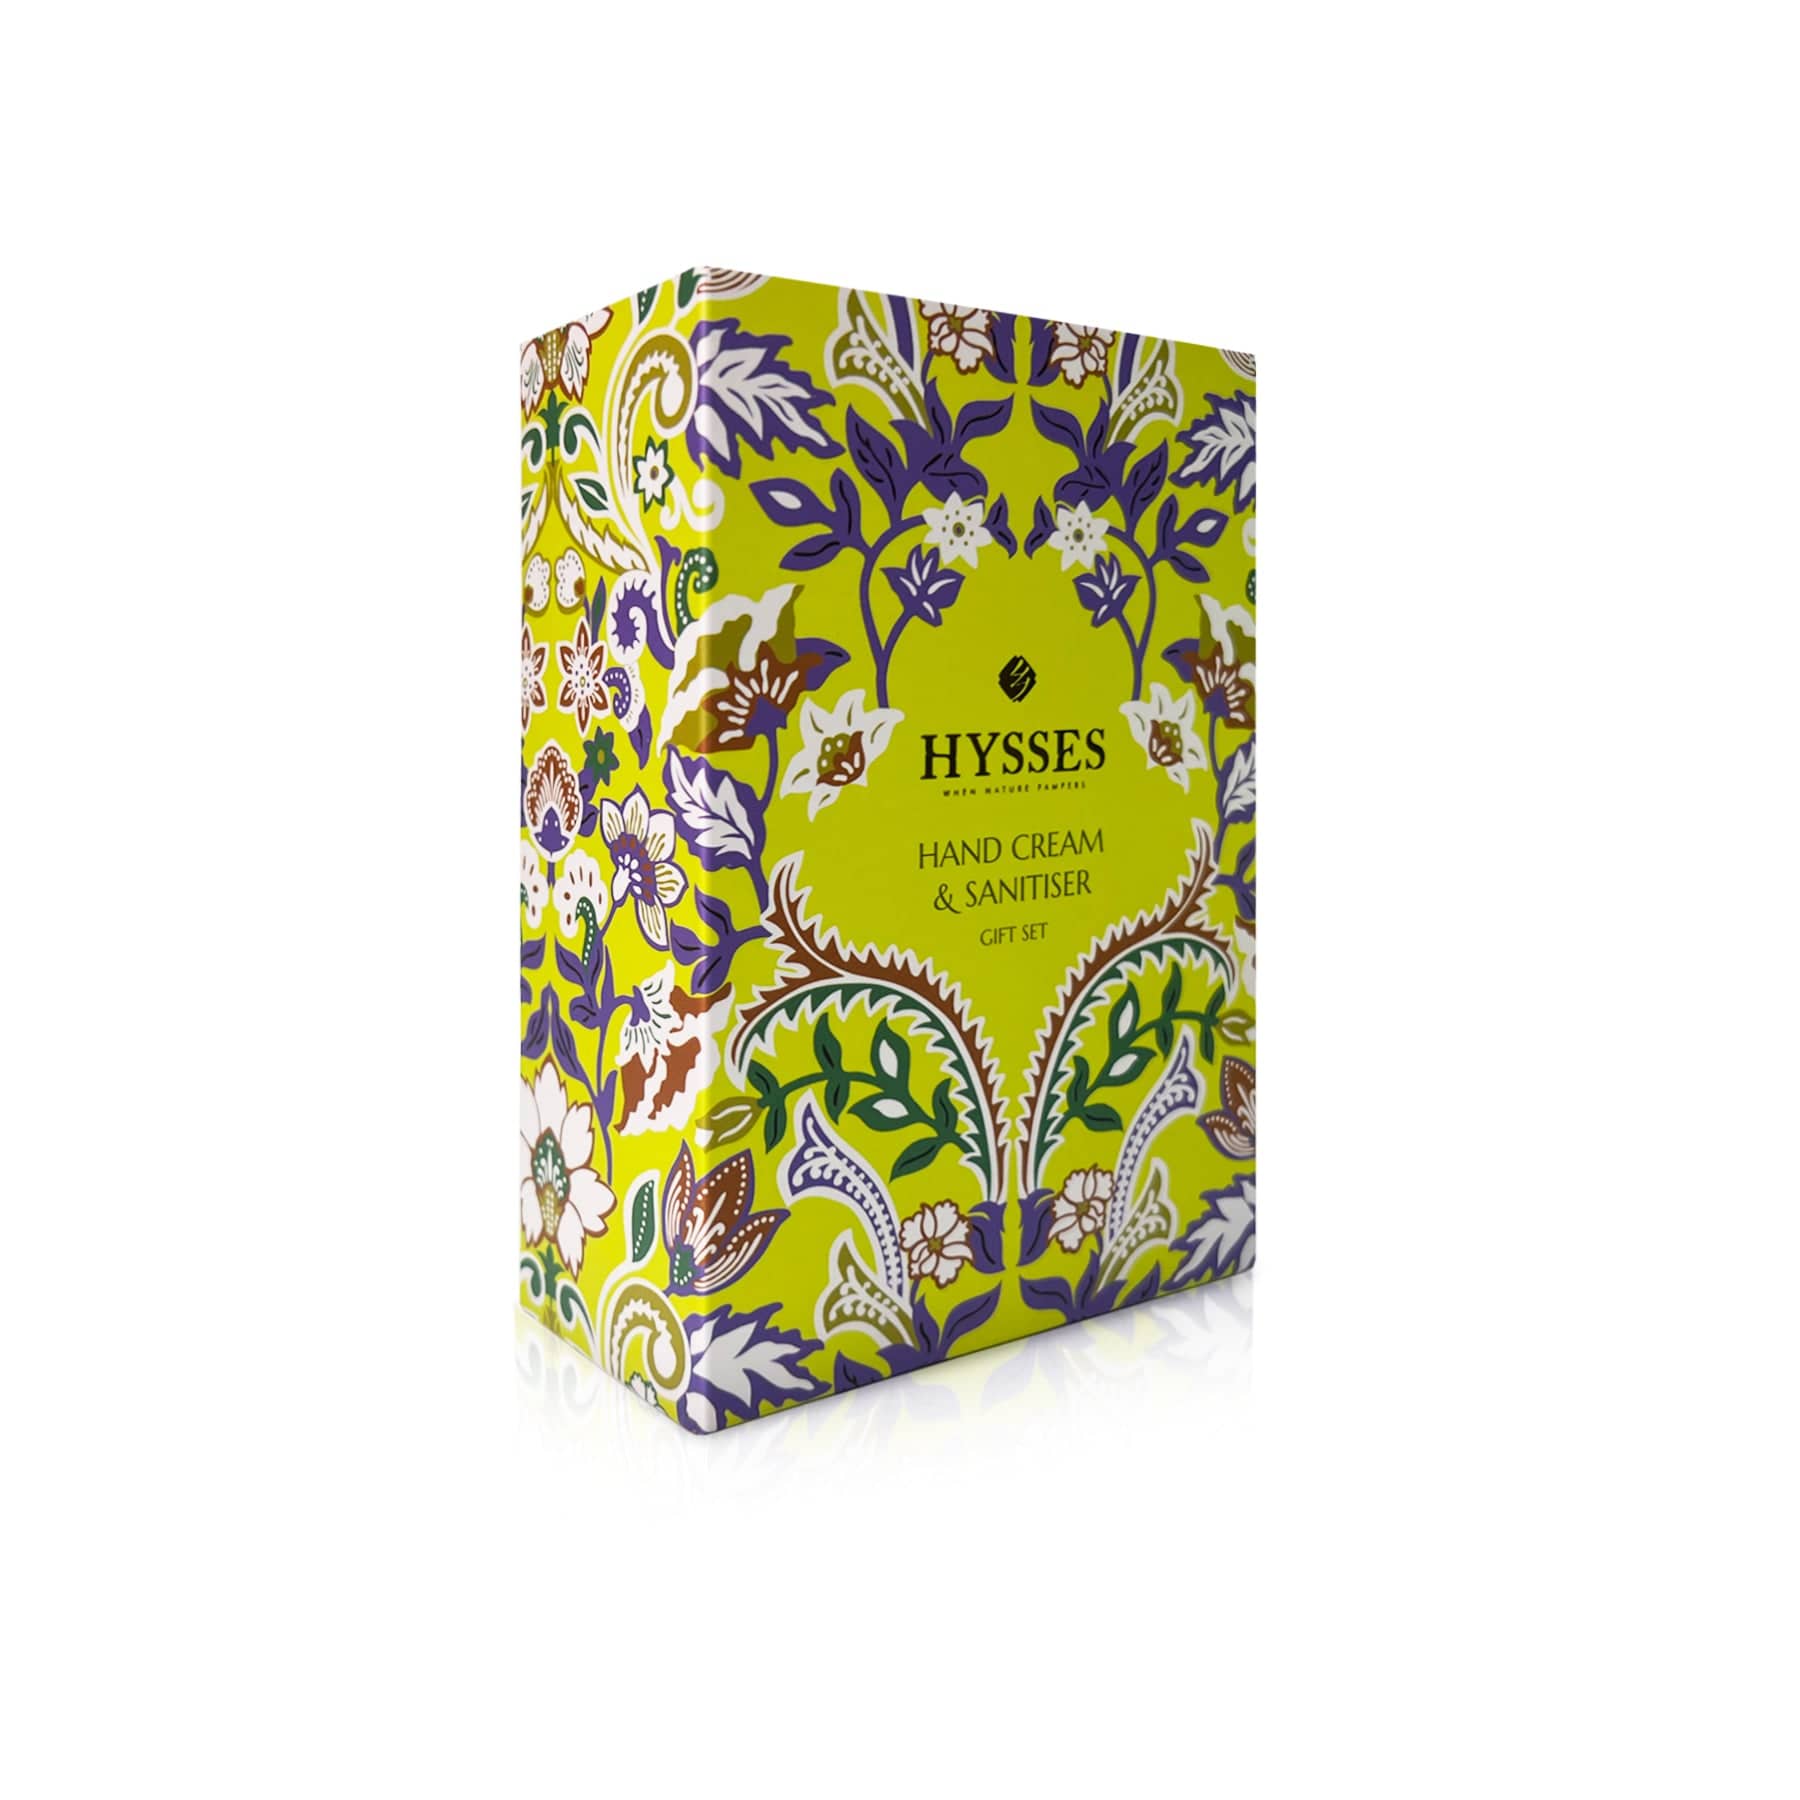 Hysses Body Care Lemongrass Travel Gift Set (Hand Cream & Hand Sanitiser) Lemongrass